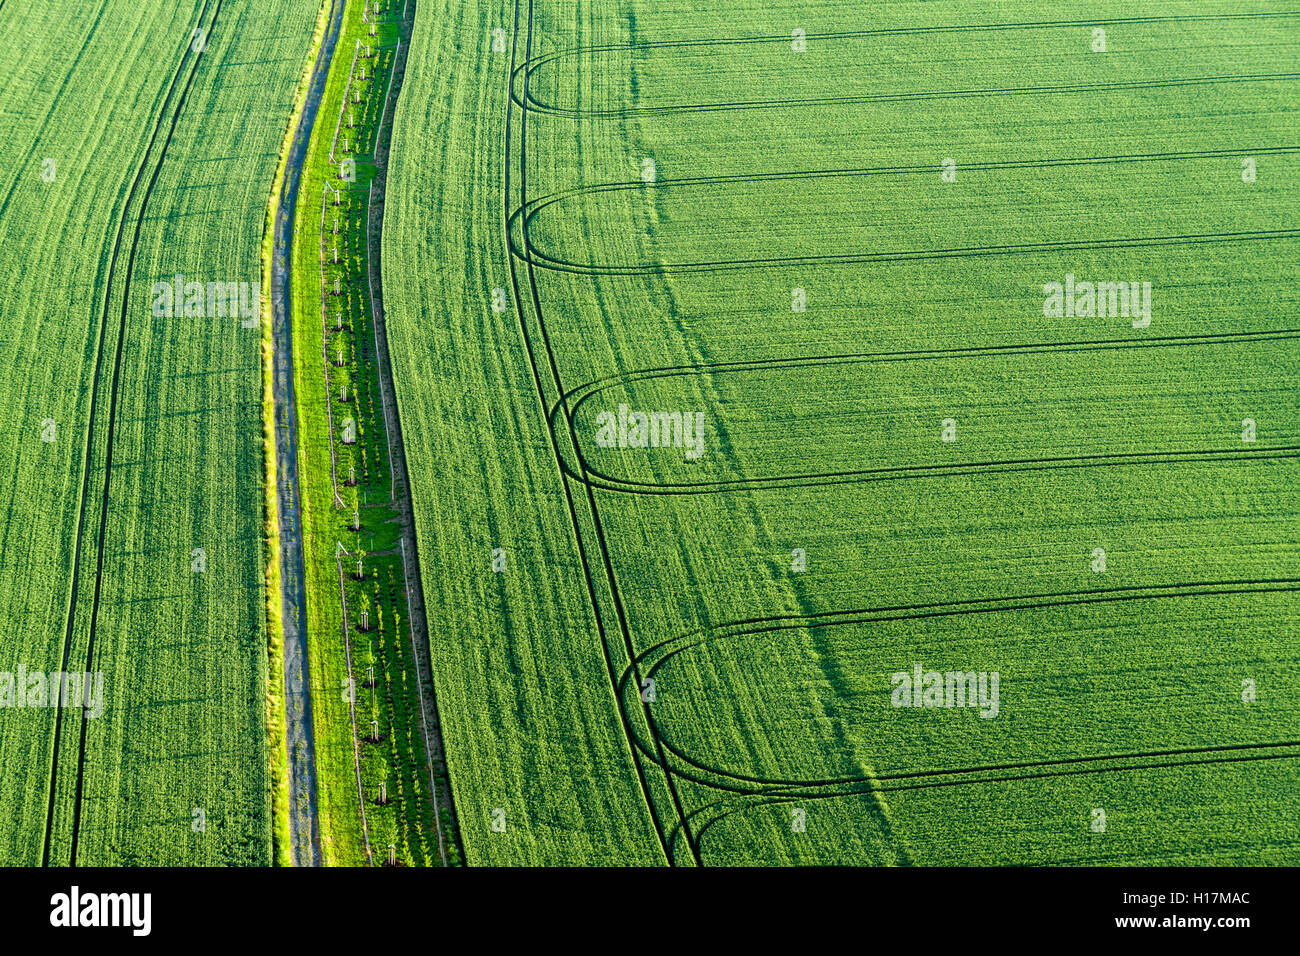 Sentier et les pistes d'un tracteur sur un champ vert, Königstein, Saxe, Allemagne Banque D'Images